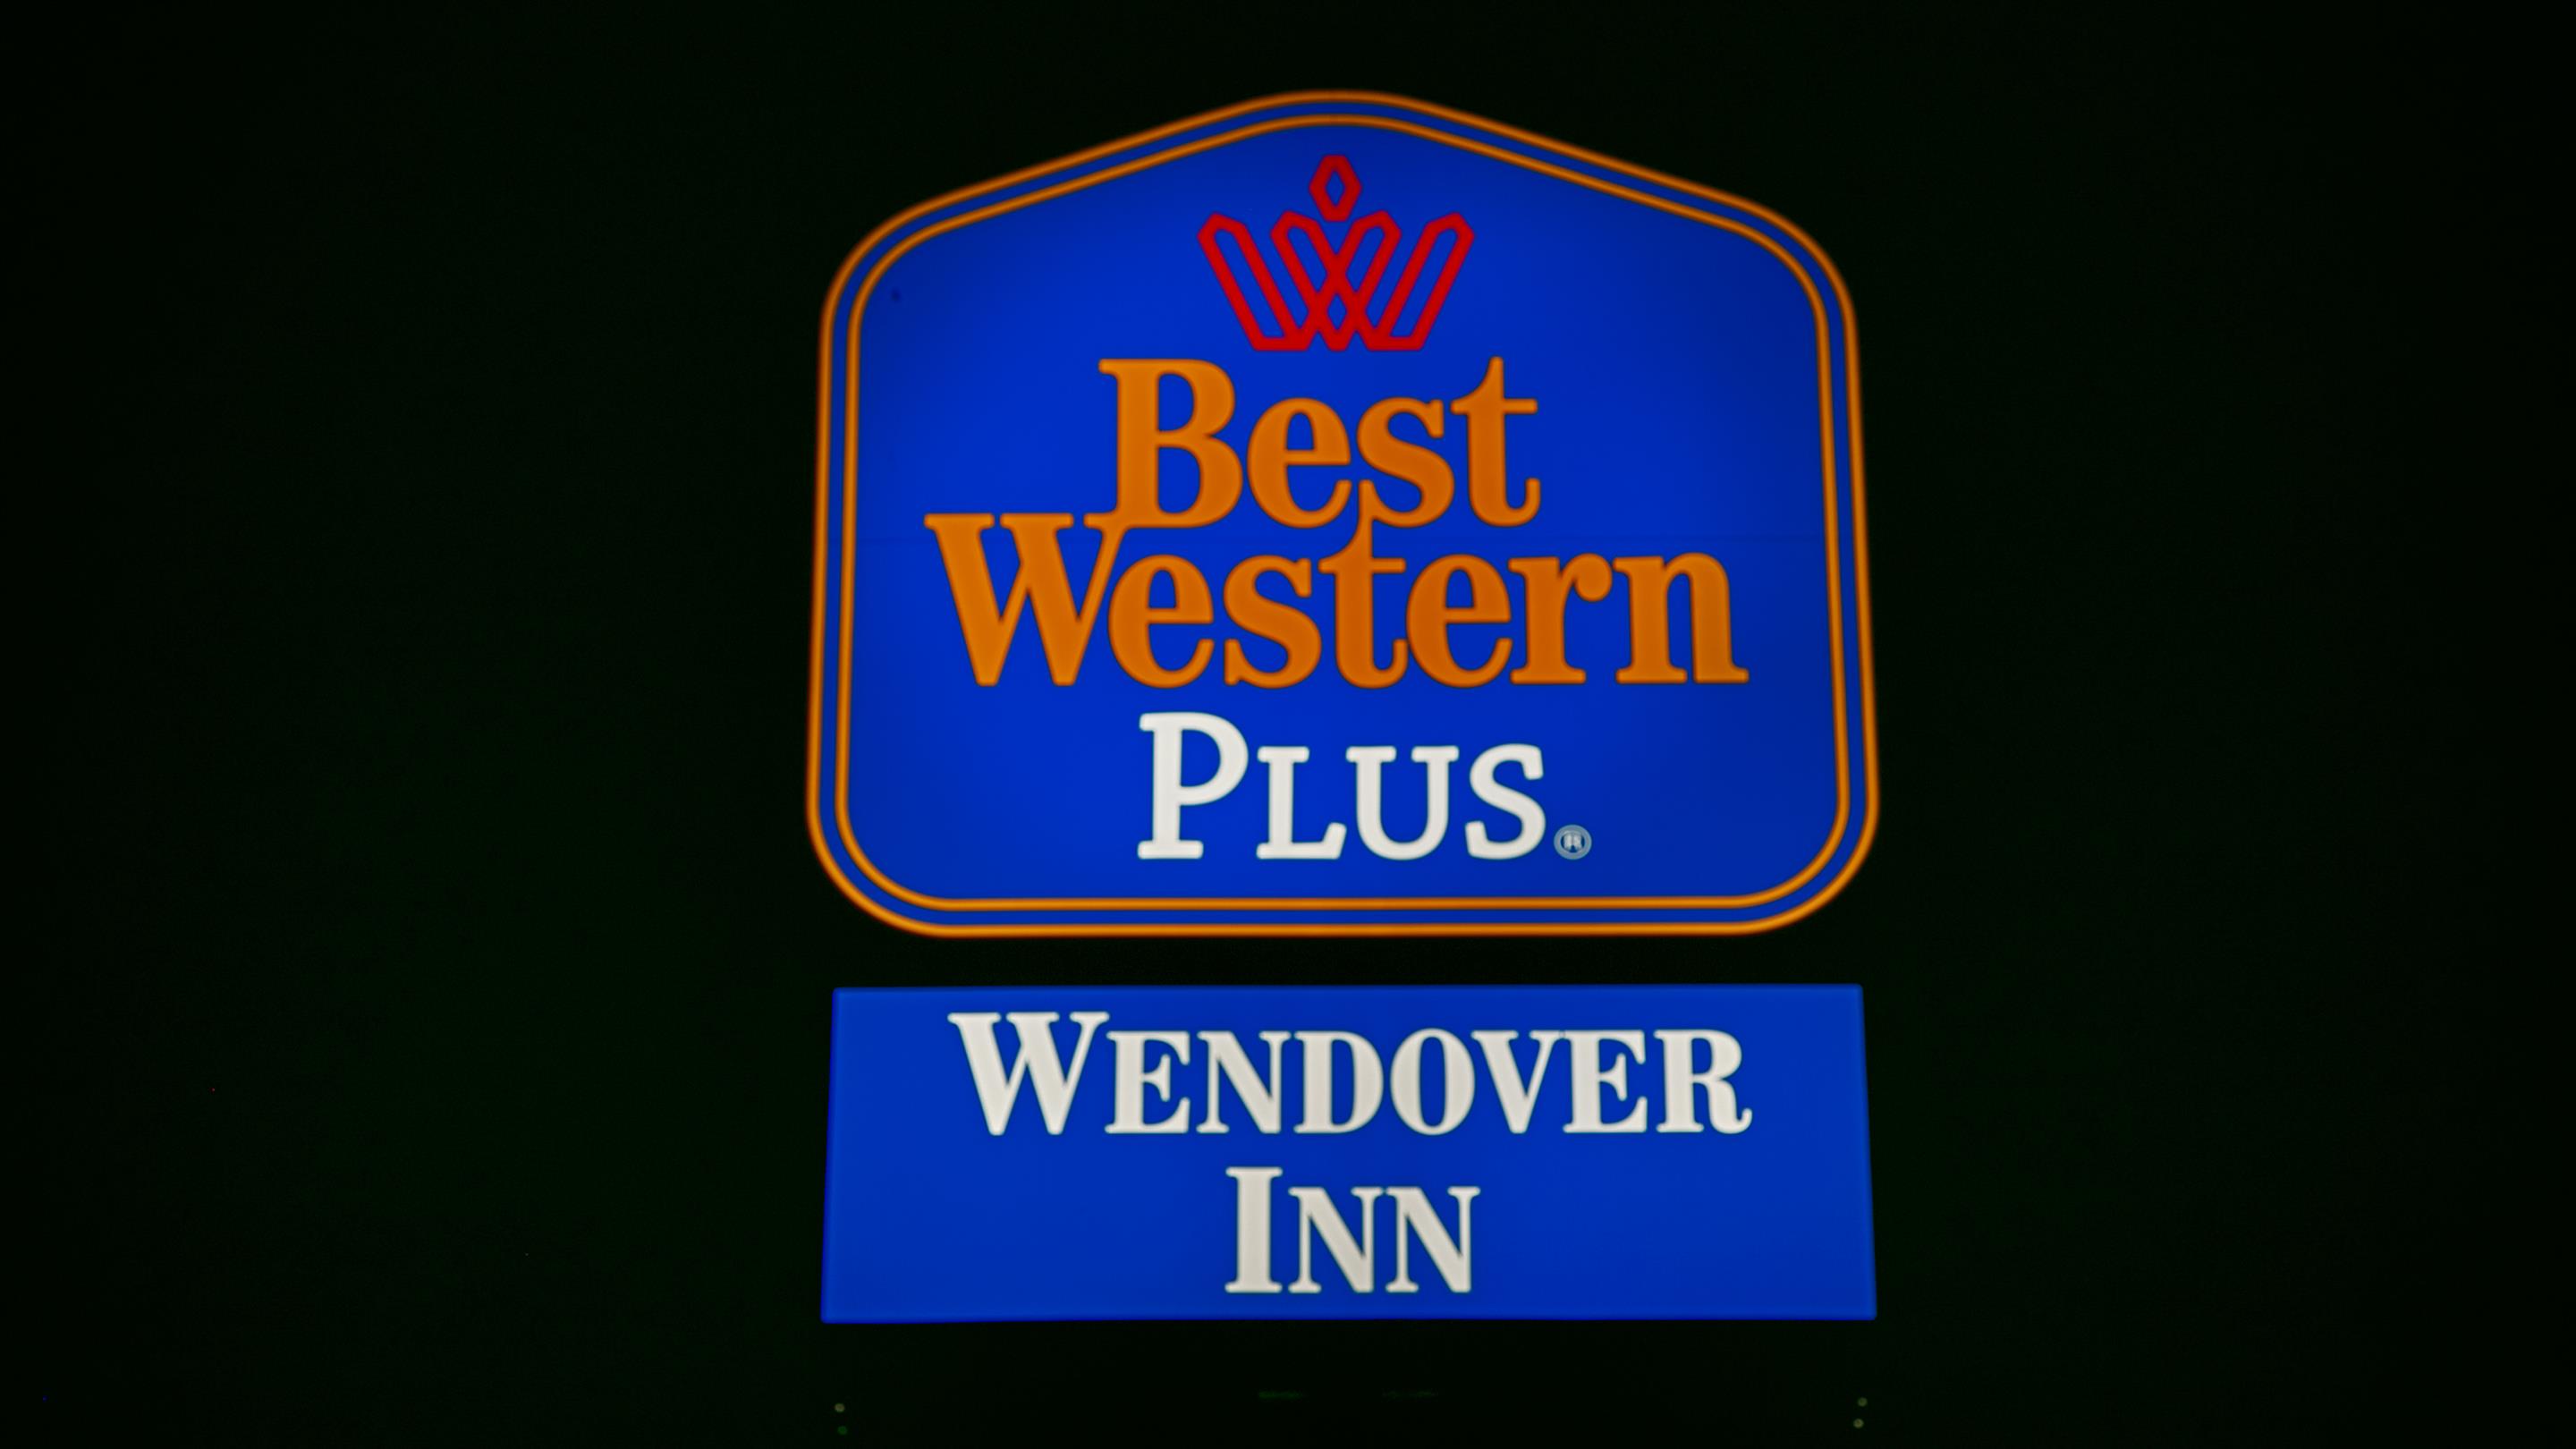 Best Western Plus - Wendover Inn